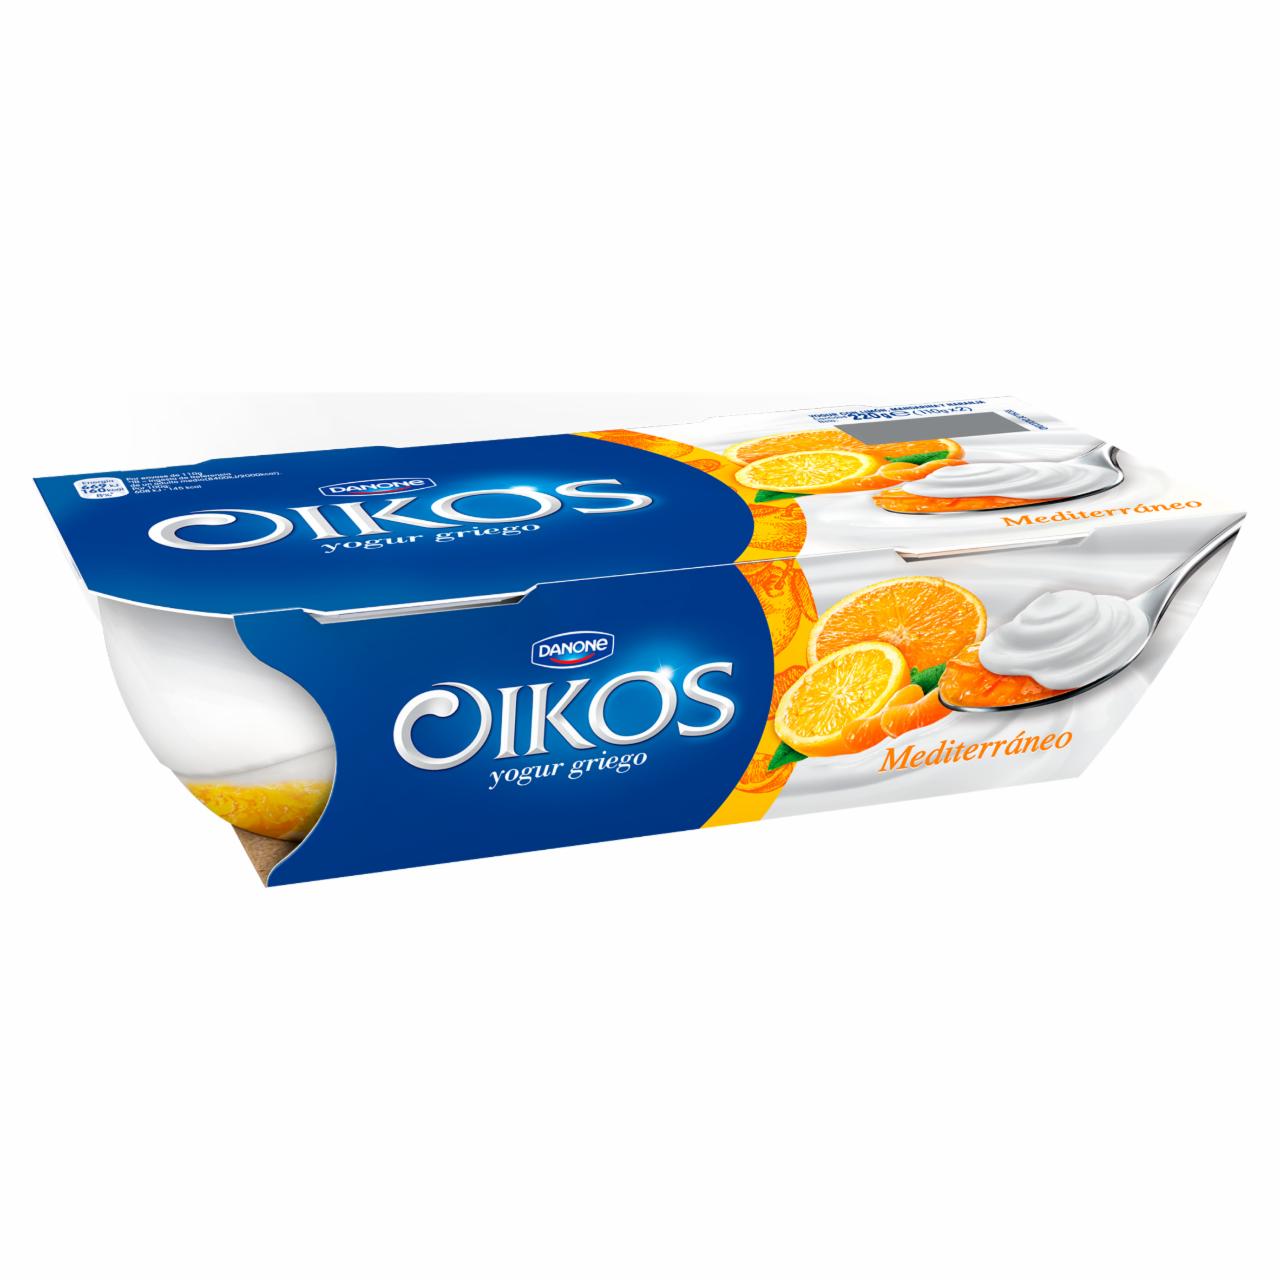 Képek - Danone Oikos élőflórás édesített görög krémjoghurt citrusos öntettel 2 x 110 g